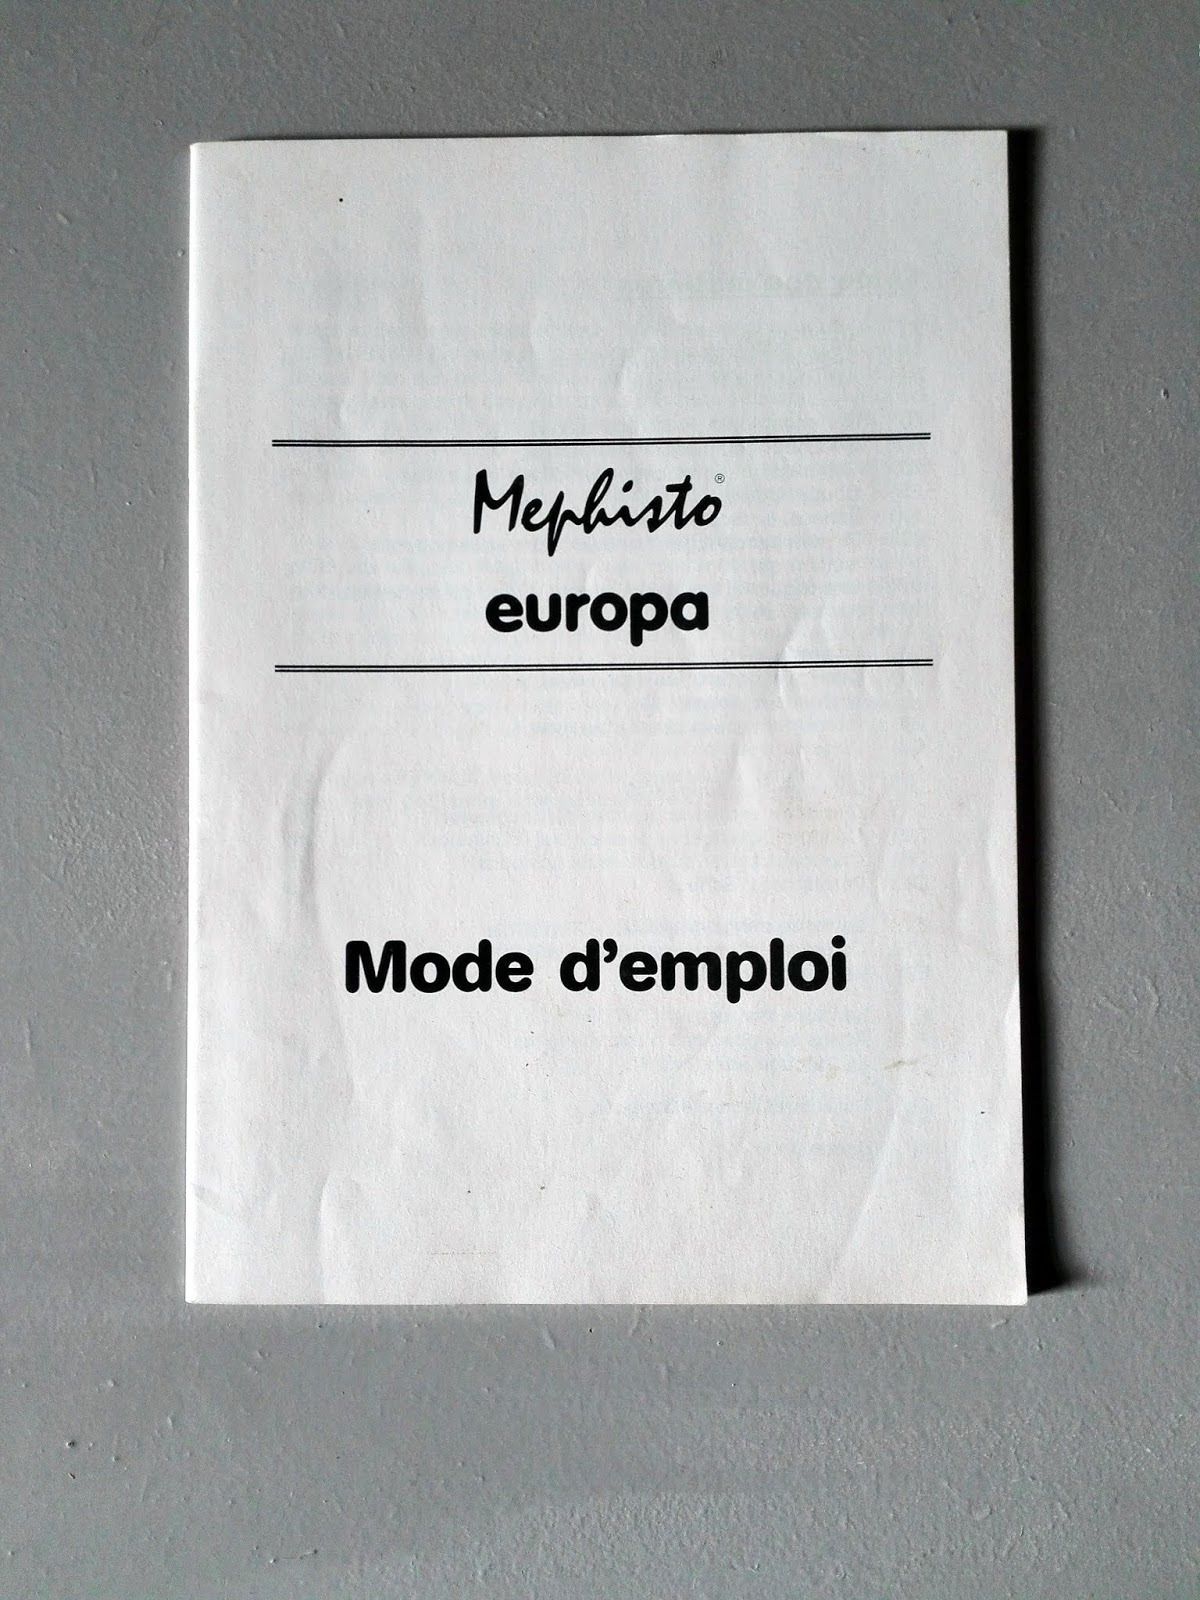 mephisto europa A jeu d'echec electronique (école des échecs) - تيارت  الجزائر